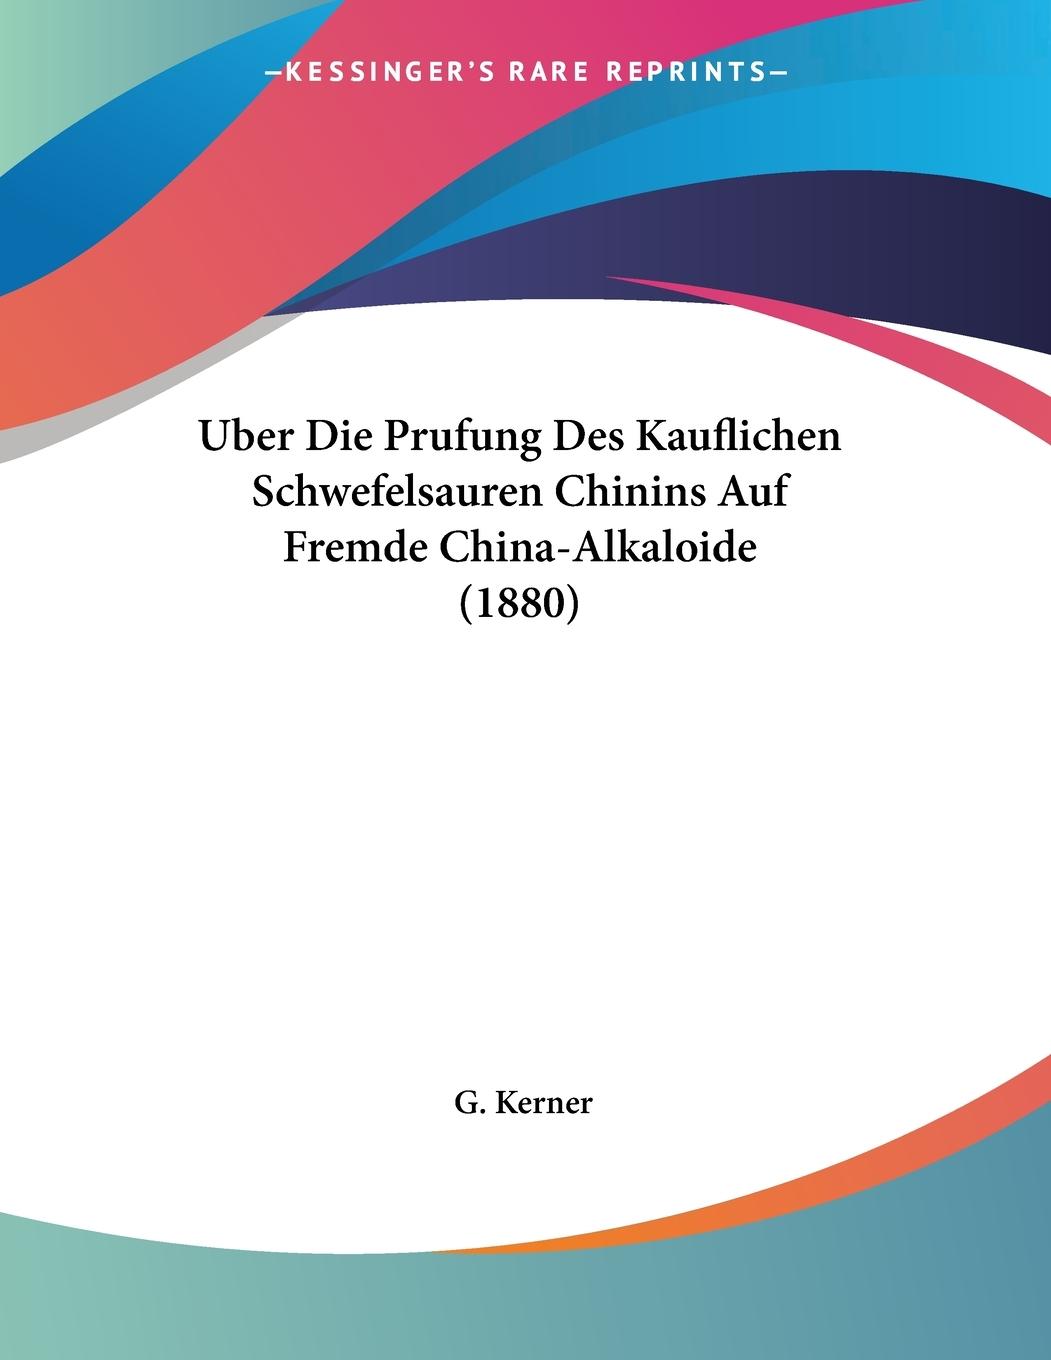 Uber Die Prufung Des Kauflichen Schwefelsauren Chinins Auf Fremde China-Alkaloide (1880) - Kerner, G.